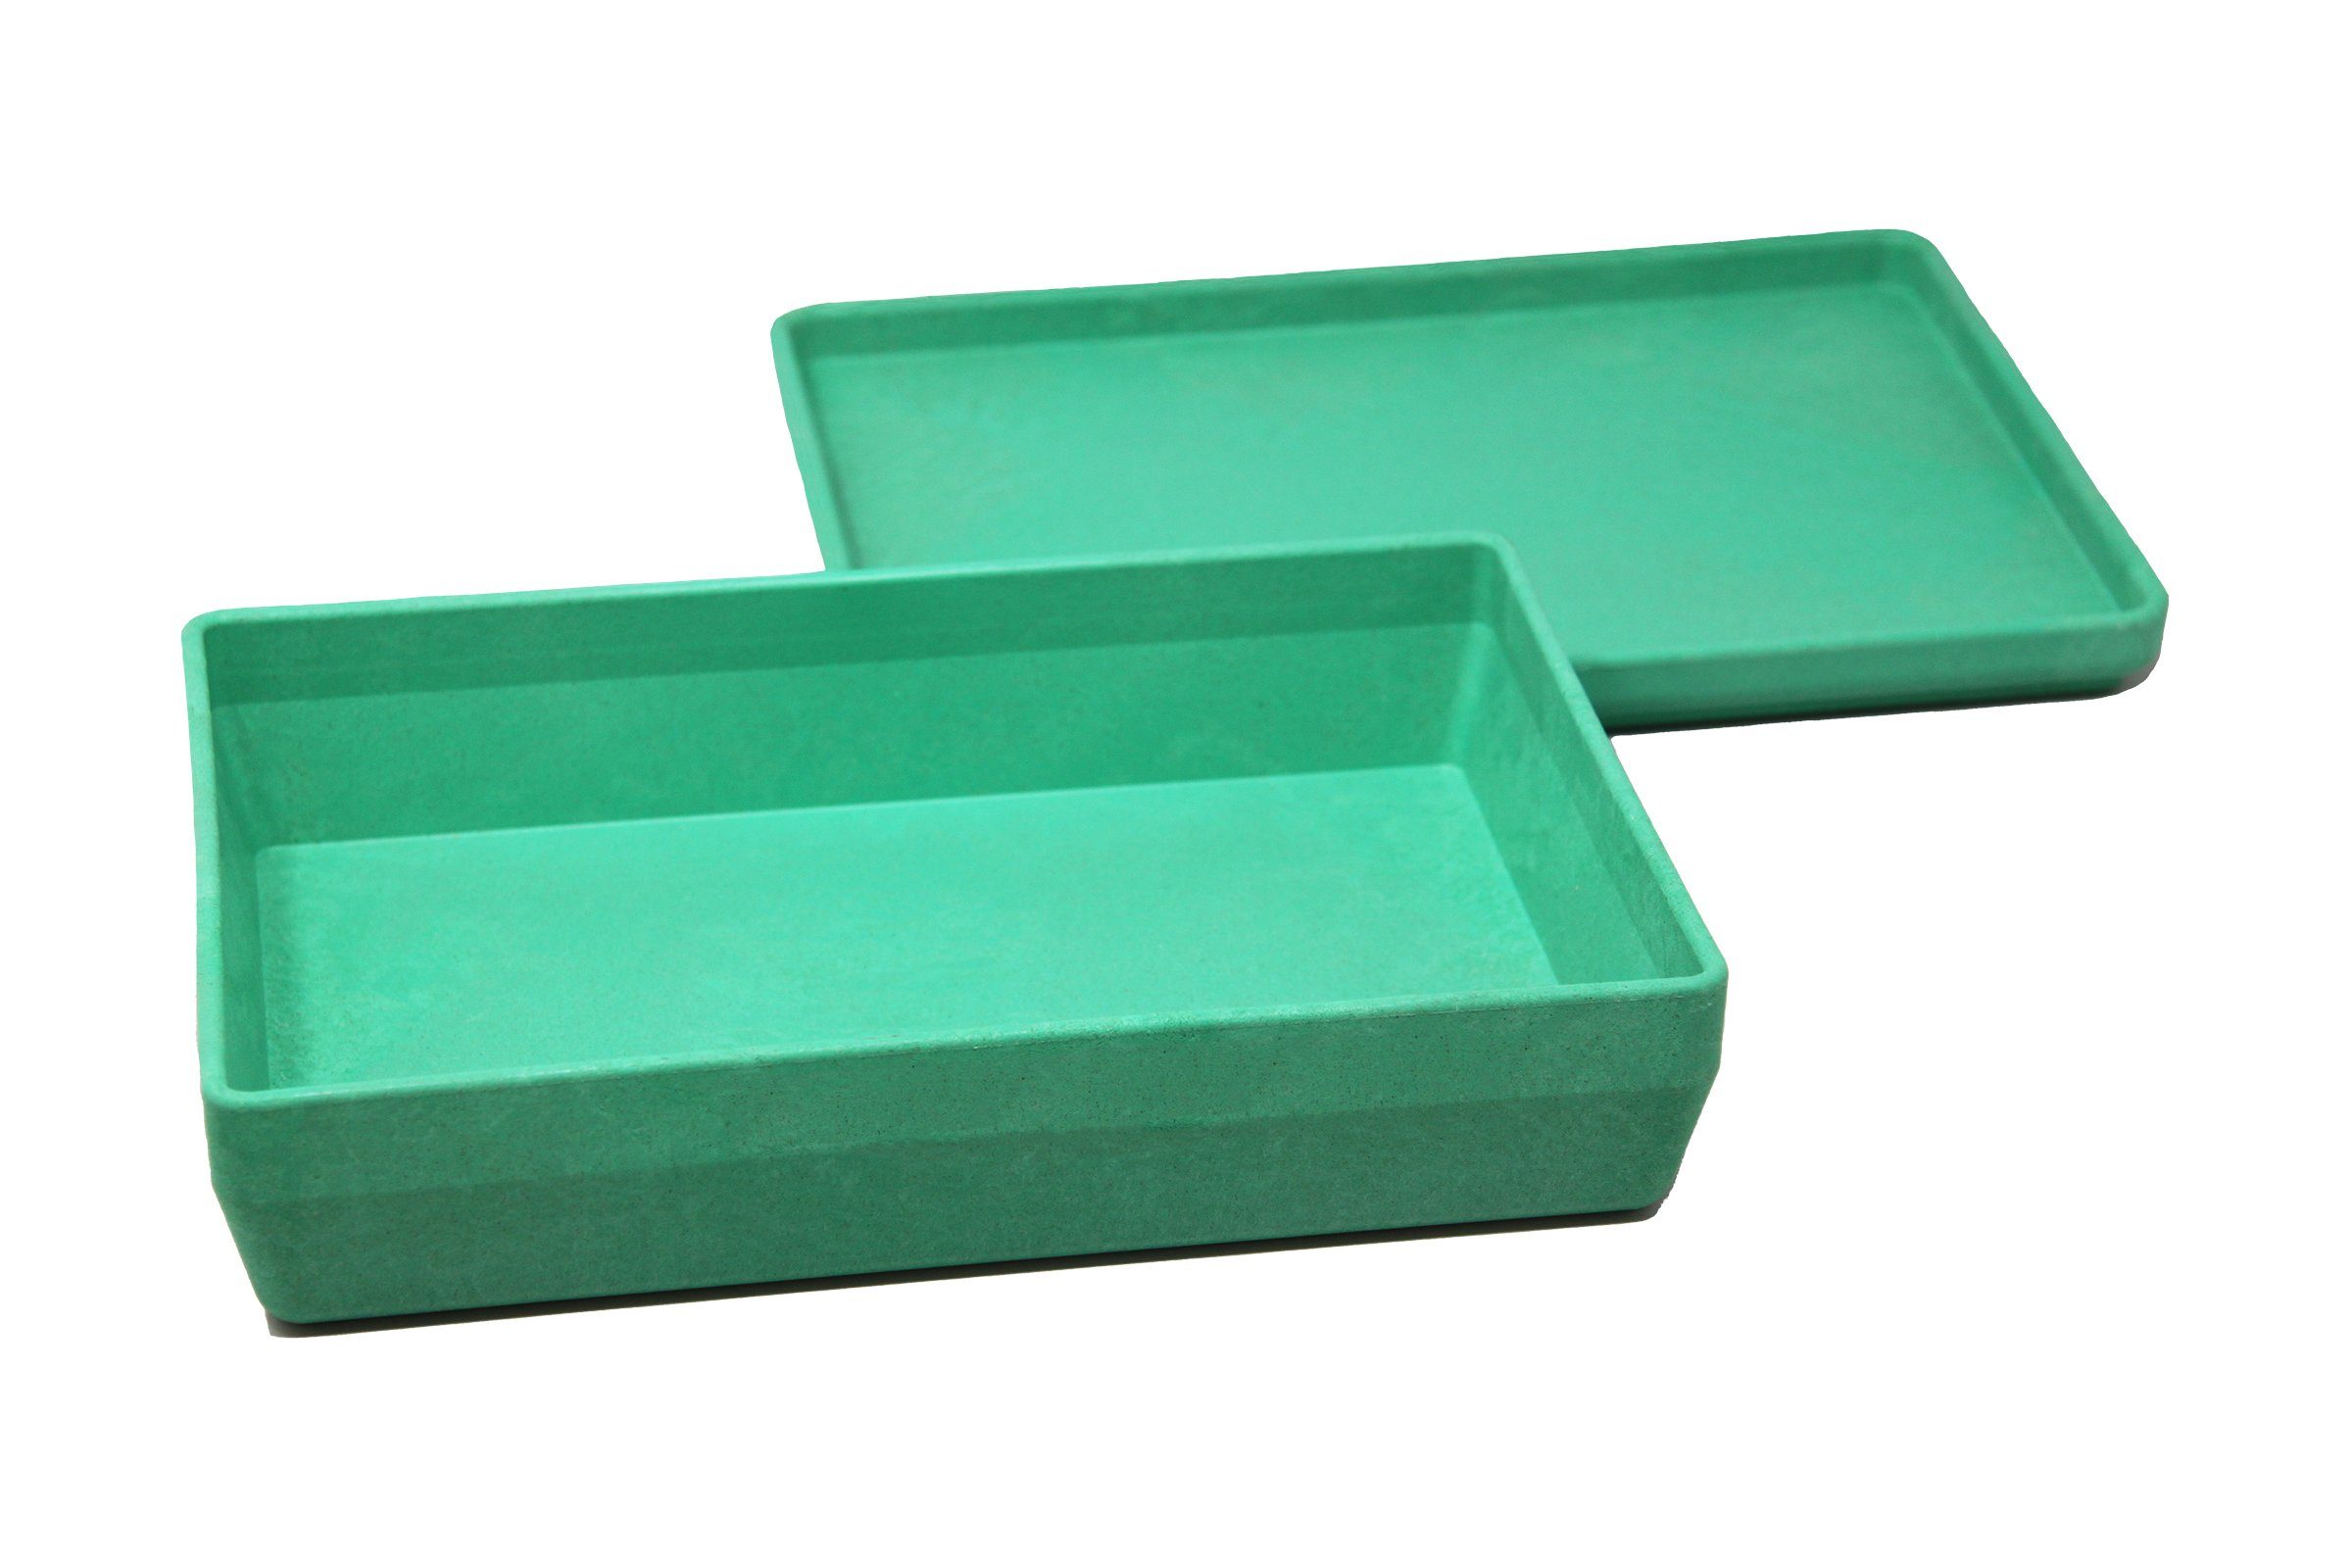 Wissner® aktiv lernen Lernspielzeug RE-Wood® Box mit Deckel in versch. Farben, Aufbewahren stapelbar grün